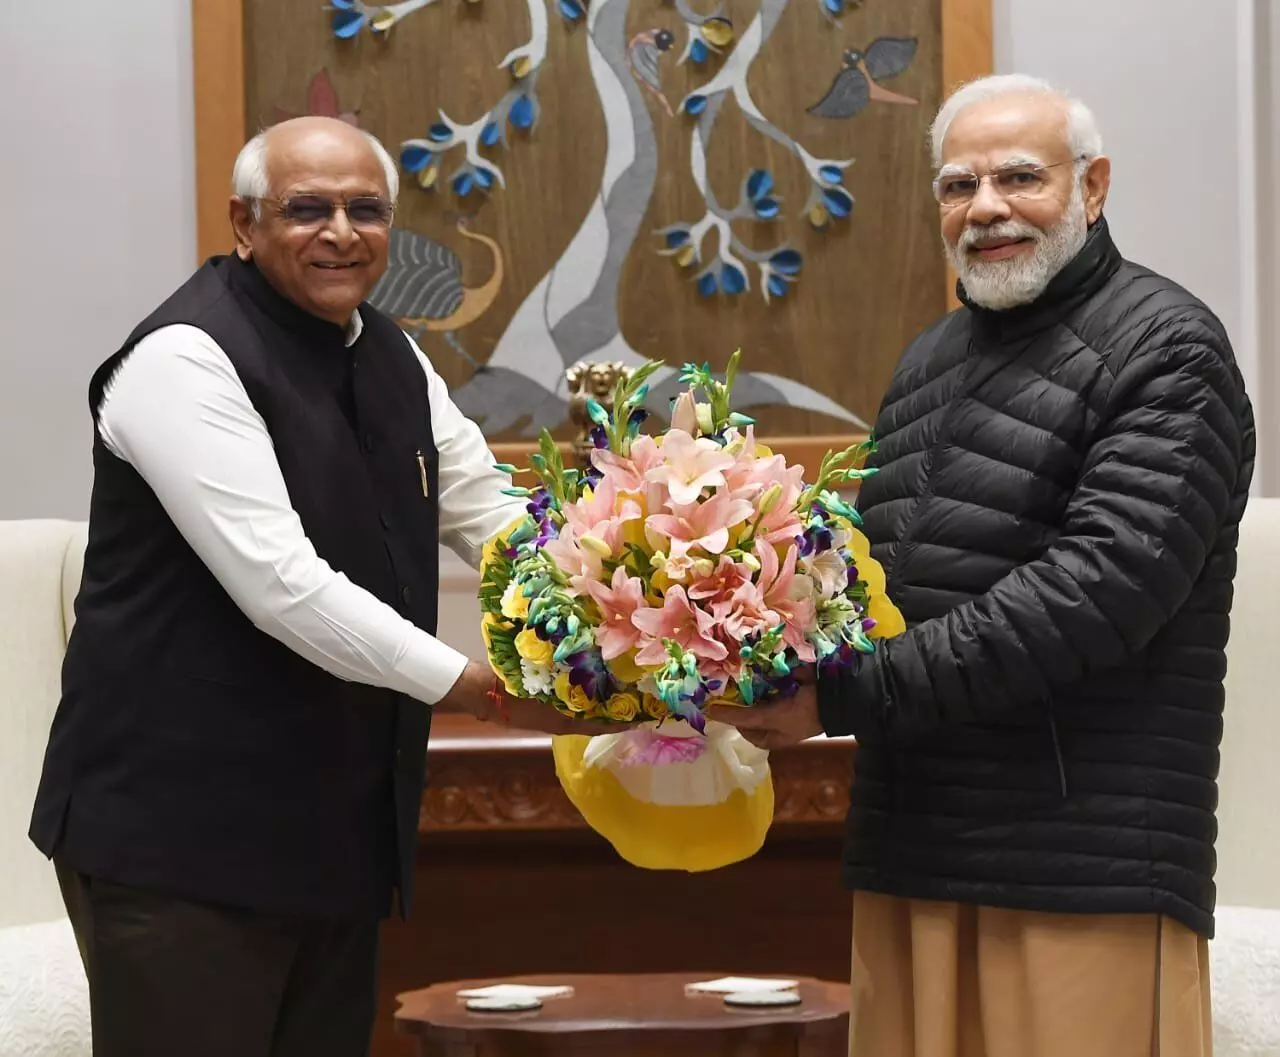 નવી સરકારની રચના બાદ CM ભૂપેન્દ્ર પટેલ દિલ્હીના પ્રવાસે : રાષ્ટ્રપતિ મૂર્મુ, PM મોદી અને અમિત શાહ સાથે કરી શુભેચ્છા મુલાકાત